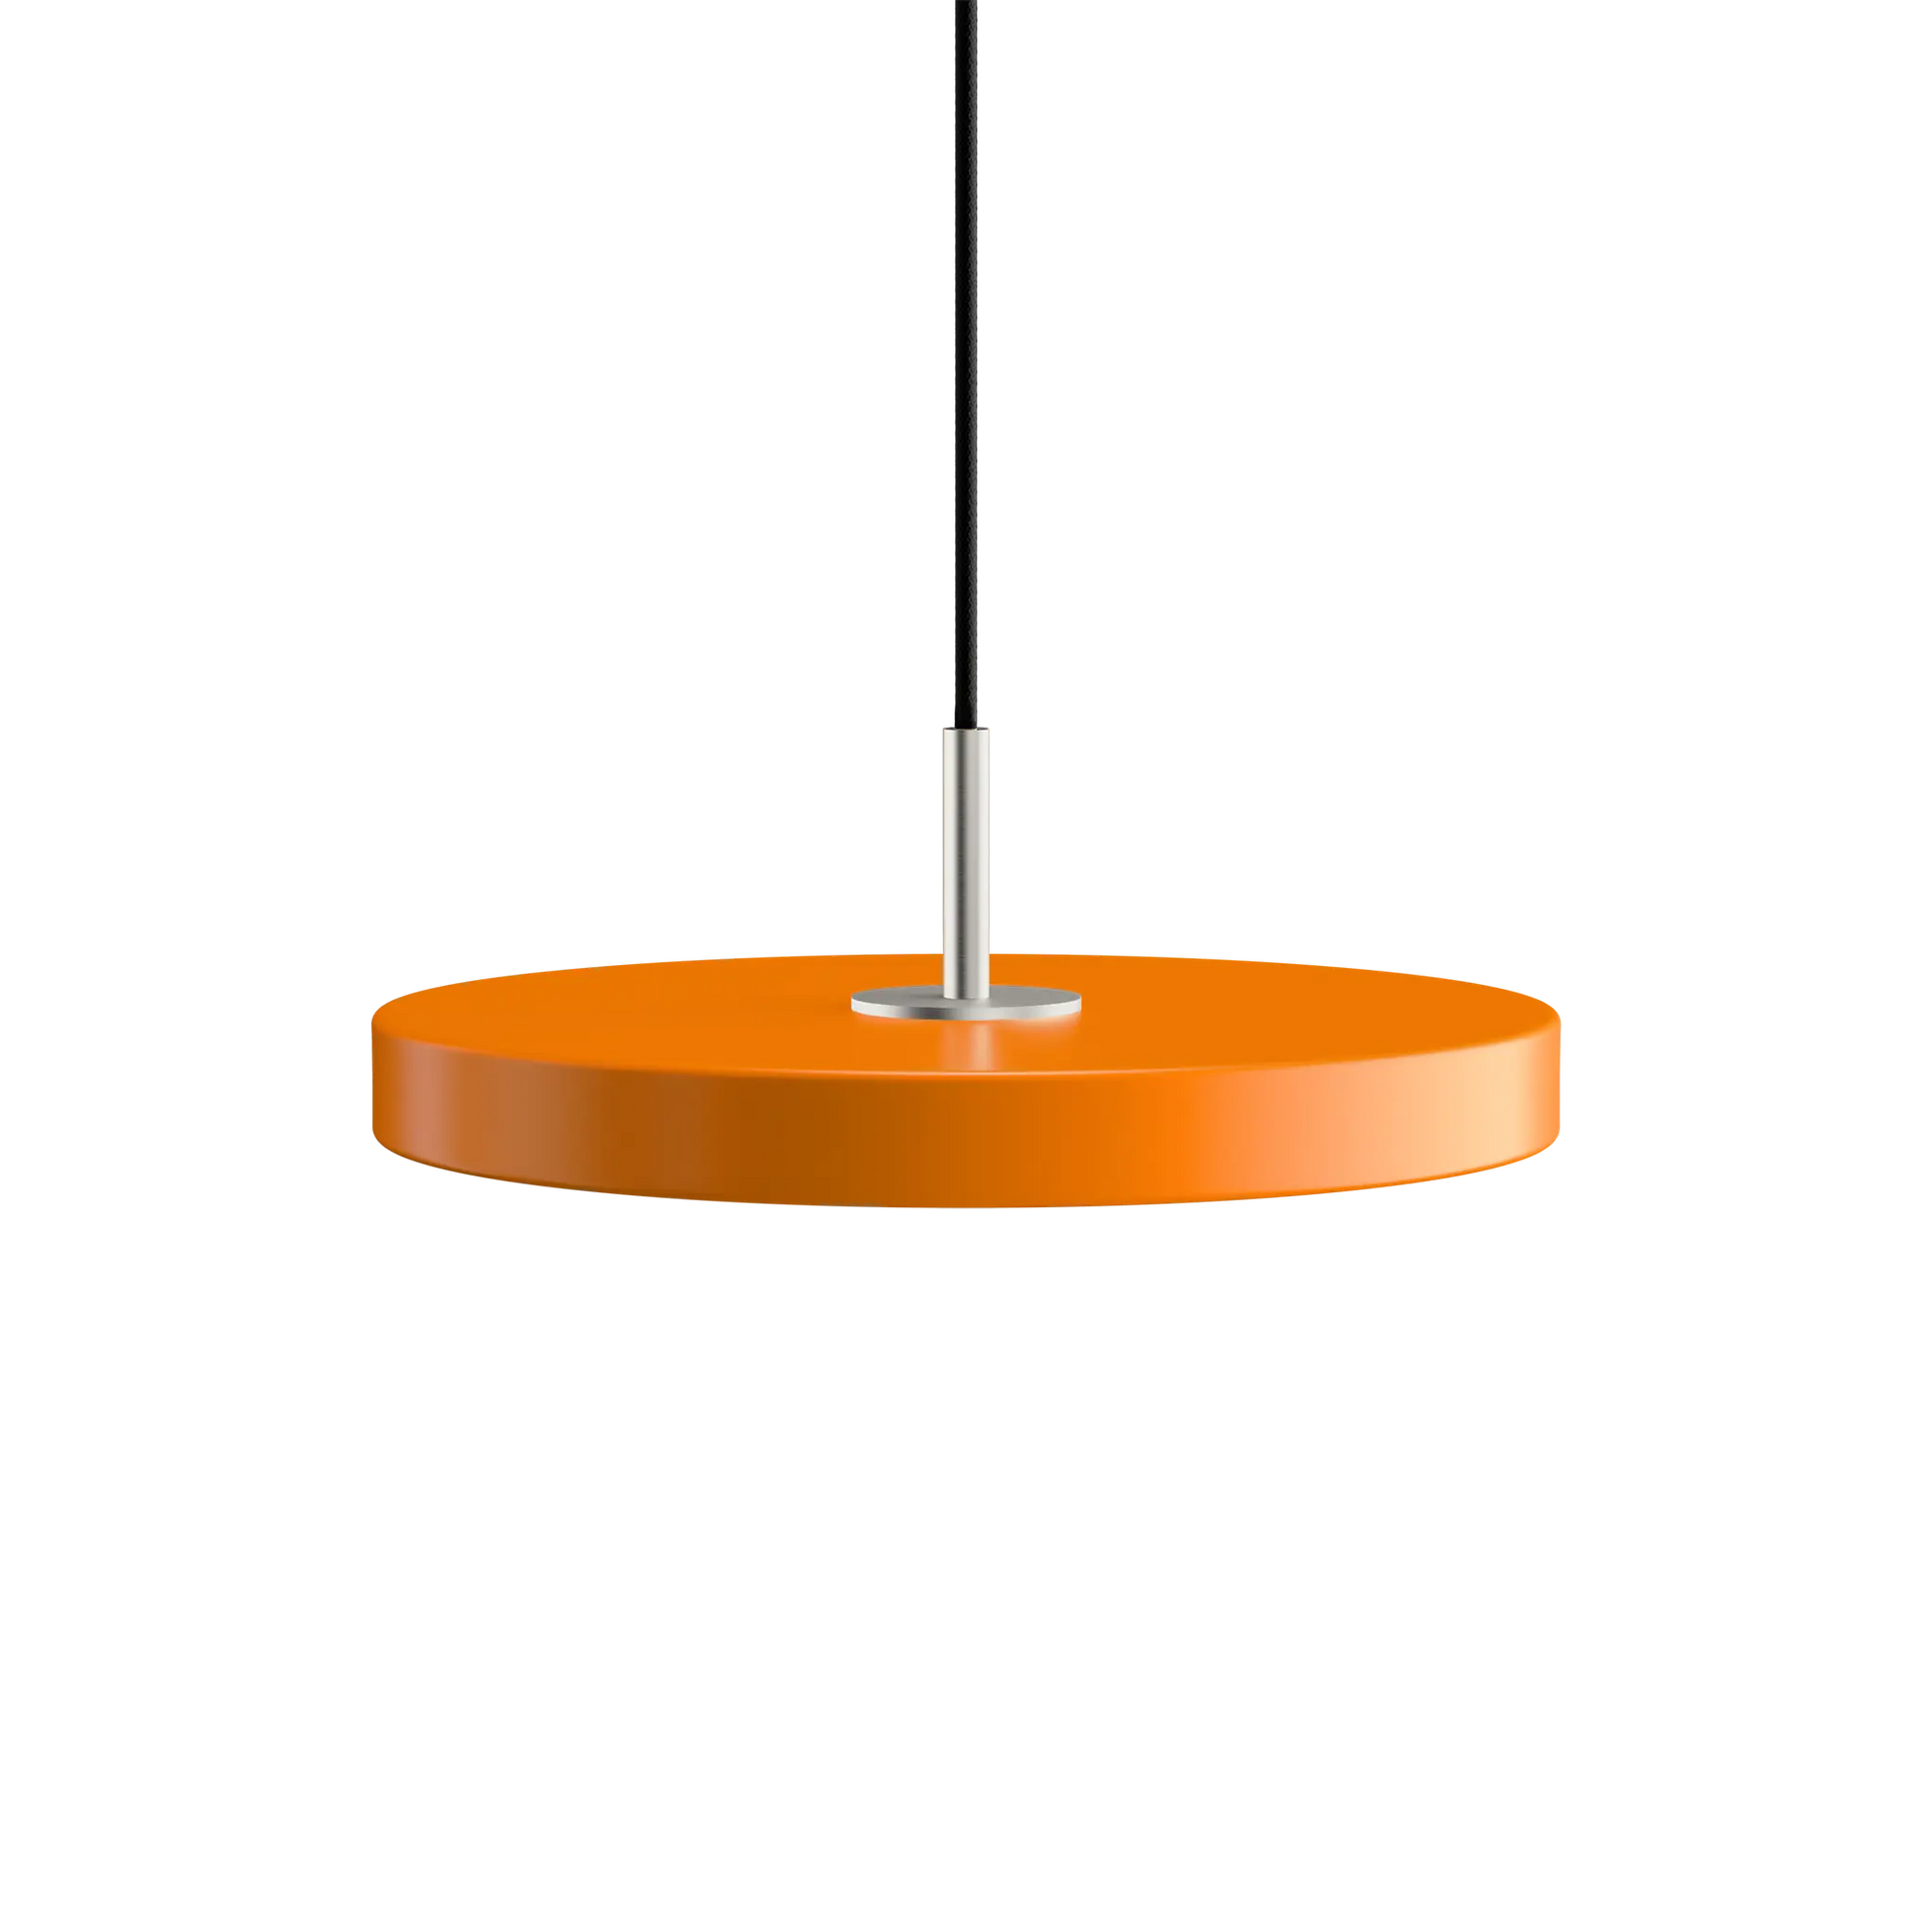 Taklampa Asteria Nuance Orange med toppdel i stål